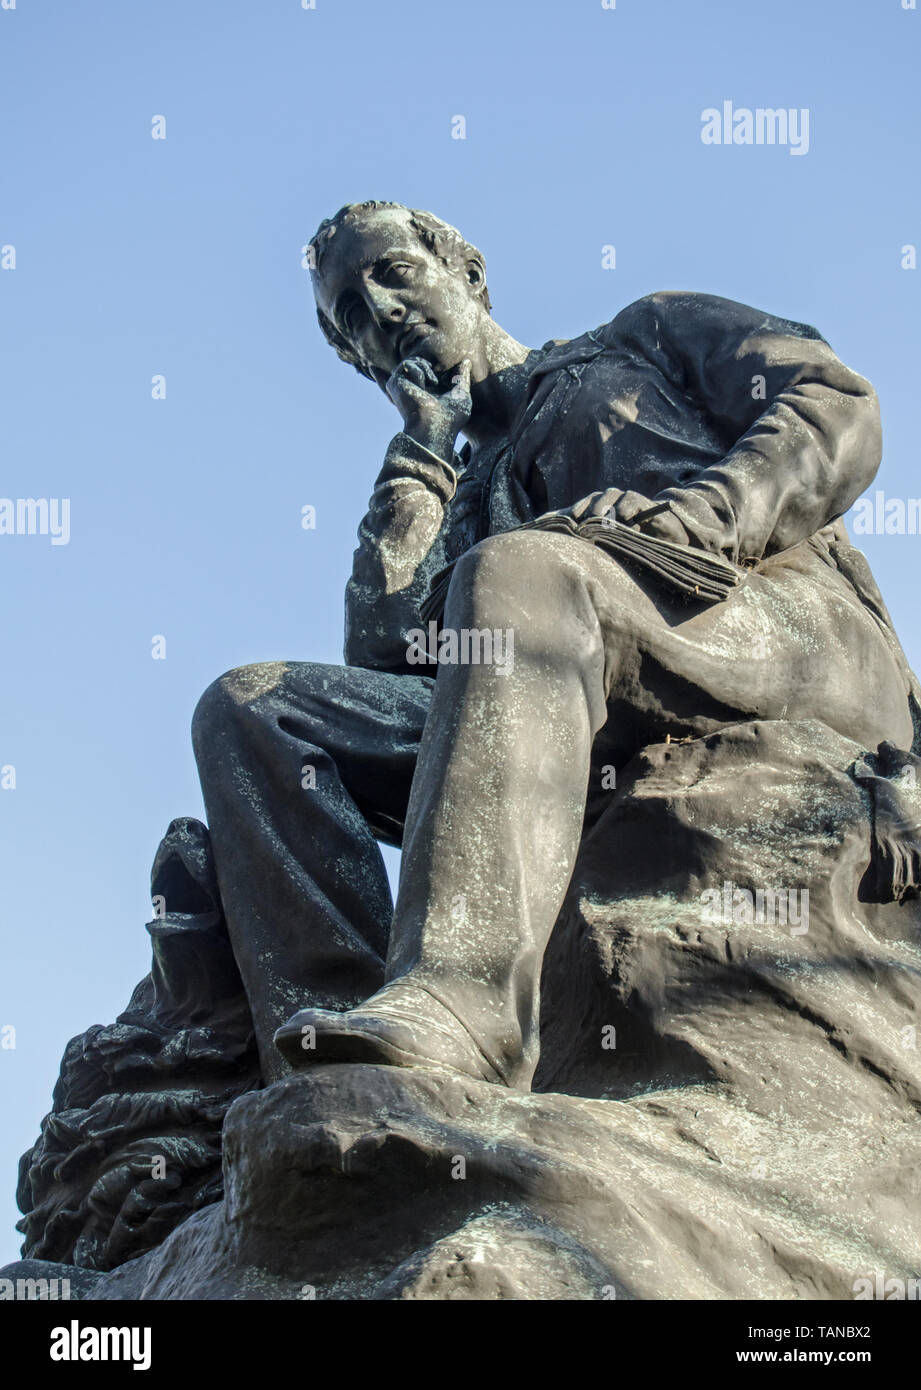 Statue commémorative au poète George Gordon Byron, 6e baron Byron assis sur des rochers avec son chien Terre-neuve Bo'sun. Sculpté par Richard Courroie, unveill Banque D'Images